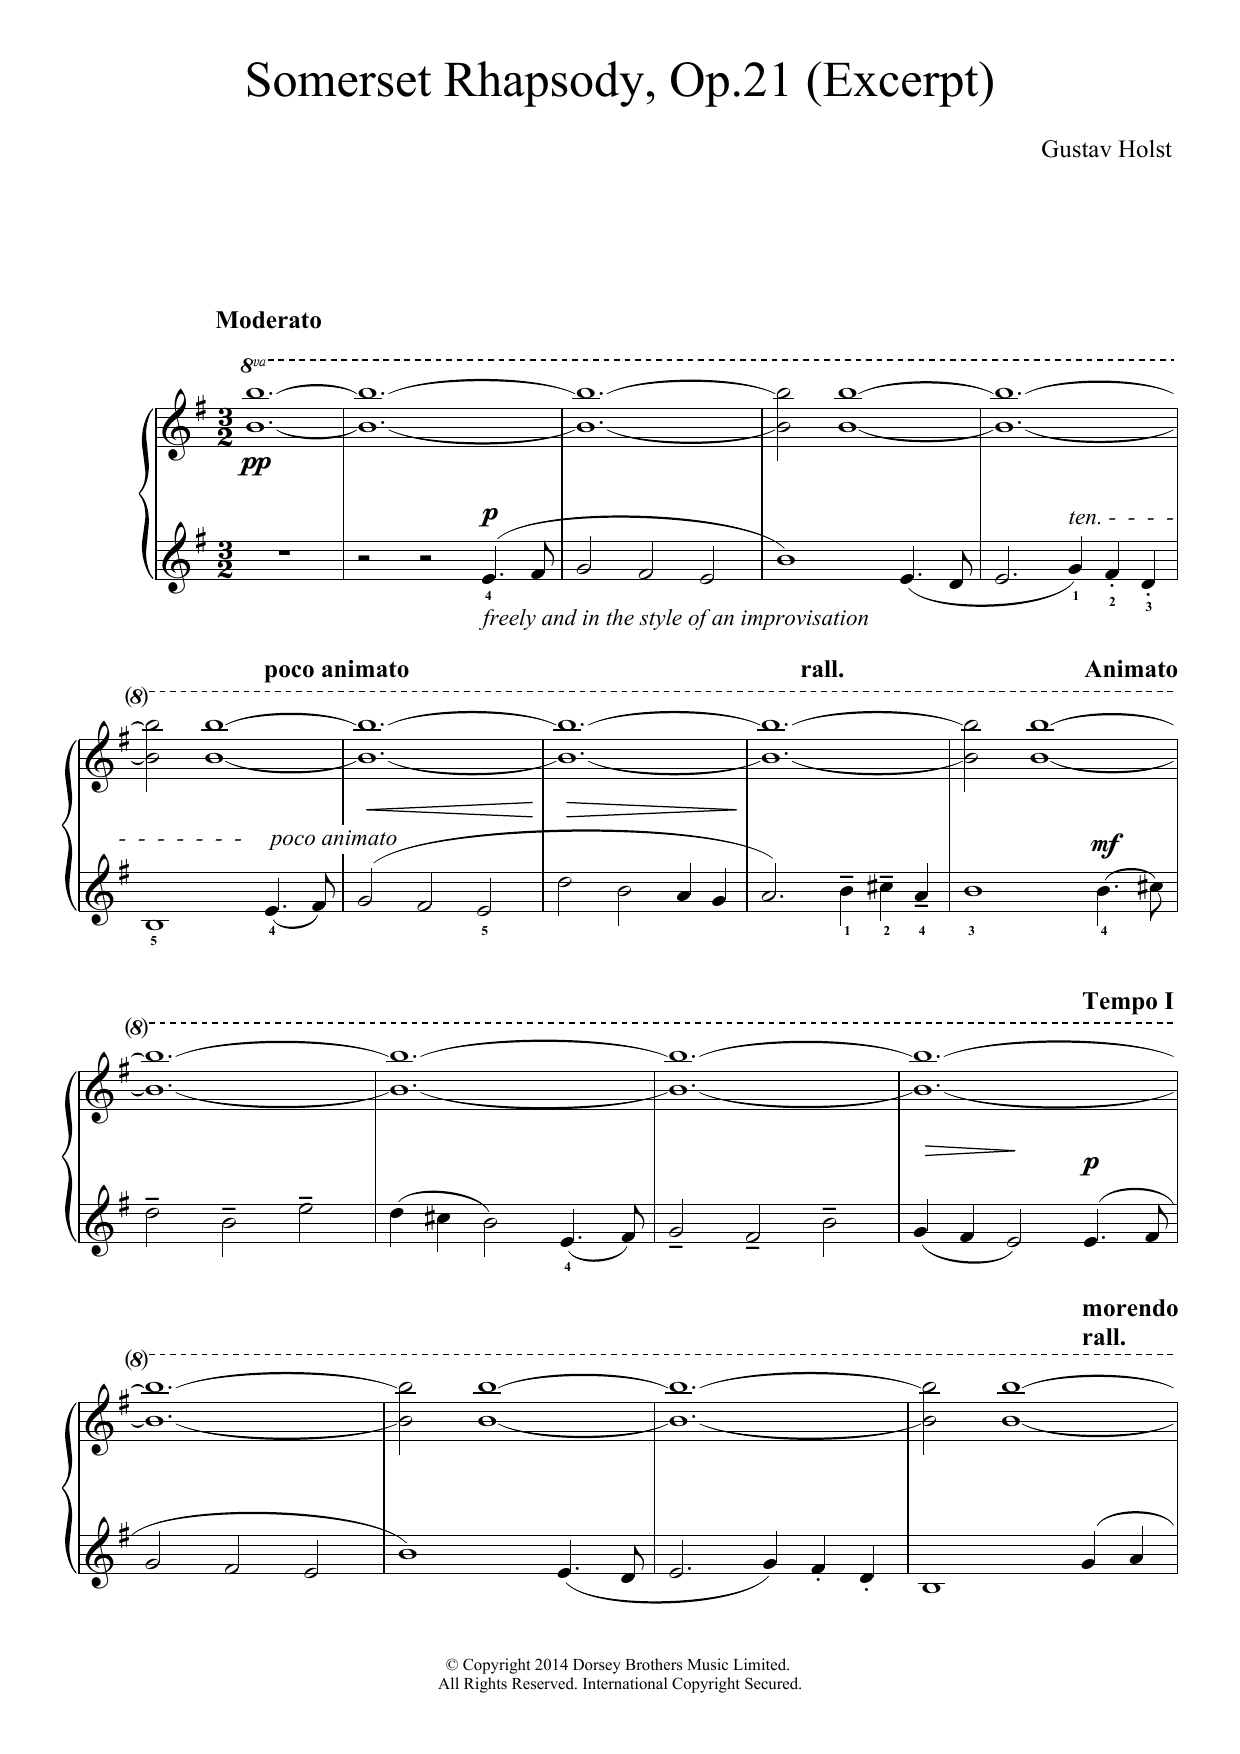 Download Gustav Holst A Somerset Rhapsody, Op. 21 Sheet Music